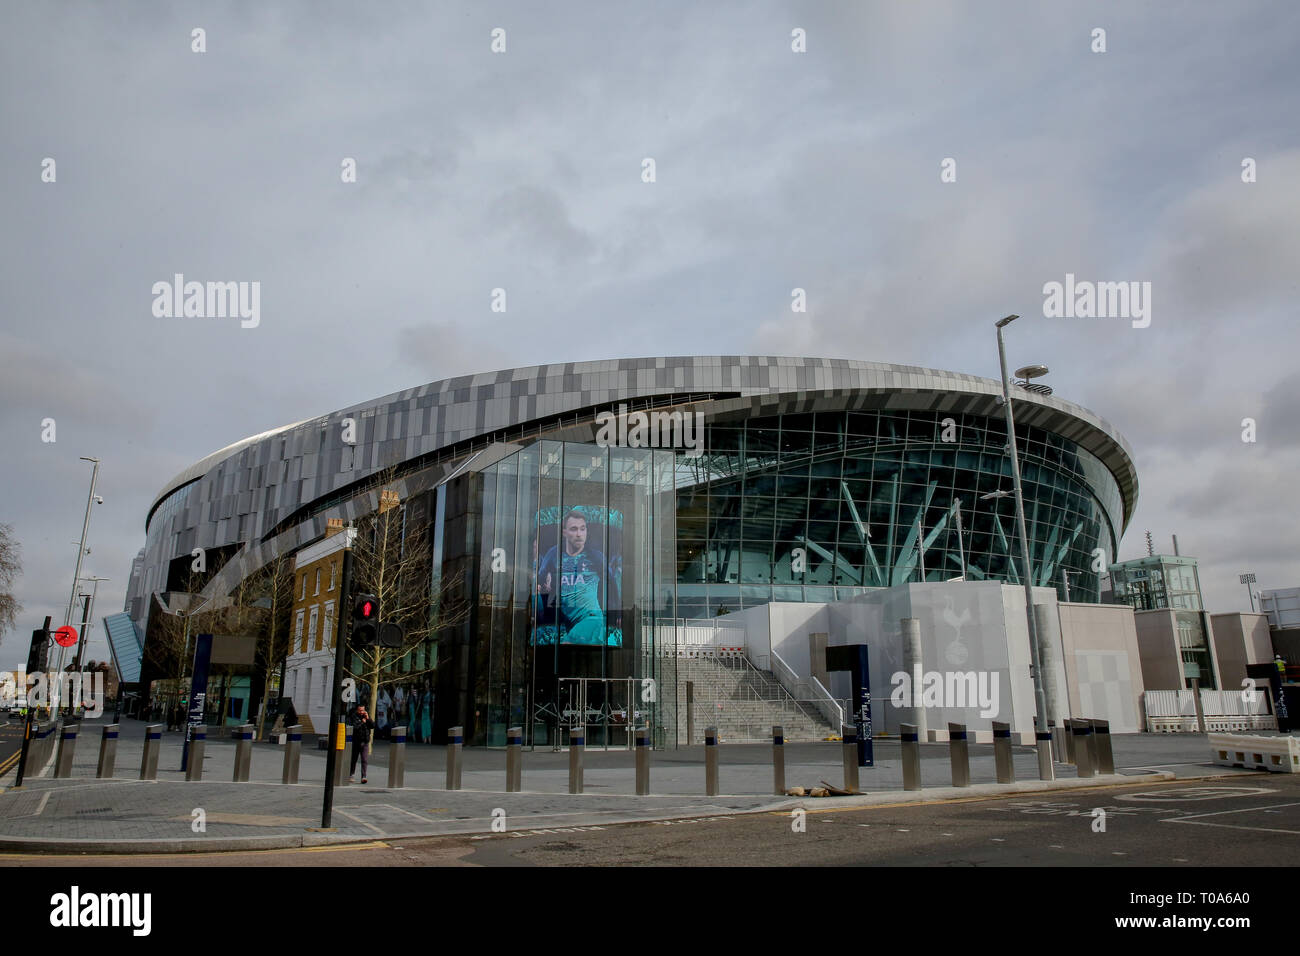 La vista exterior del nuevo estadio del Tottenham Hotspur. El club de fútbol han confirmado que jugarán el primer partido en su nuevo estadio de White Hart Lane, contra el Crystal Palace el miércoles 3 de abril de 2019. Foto de stock